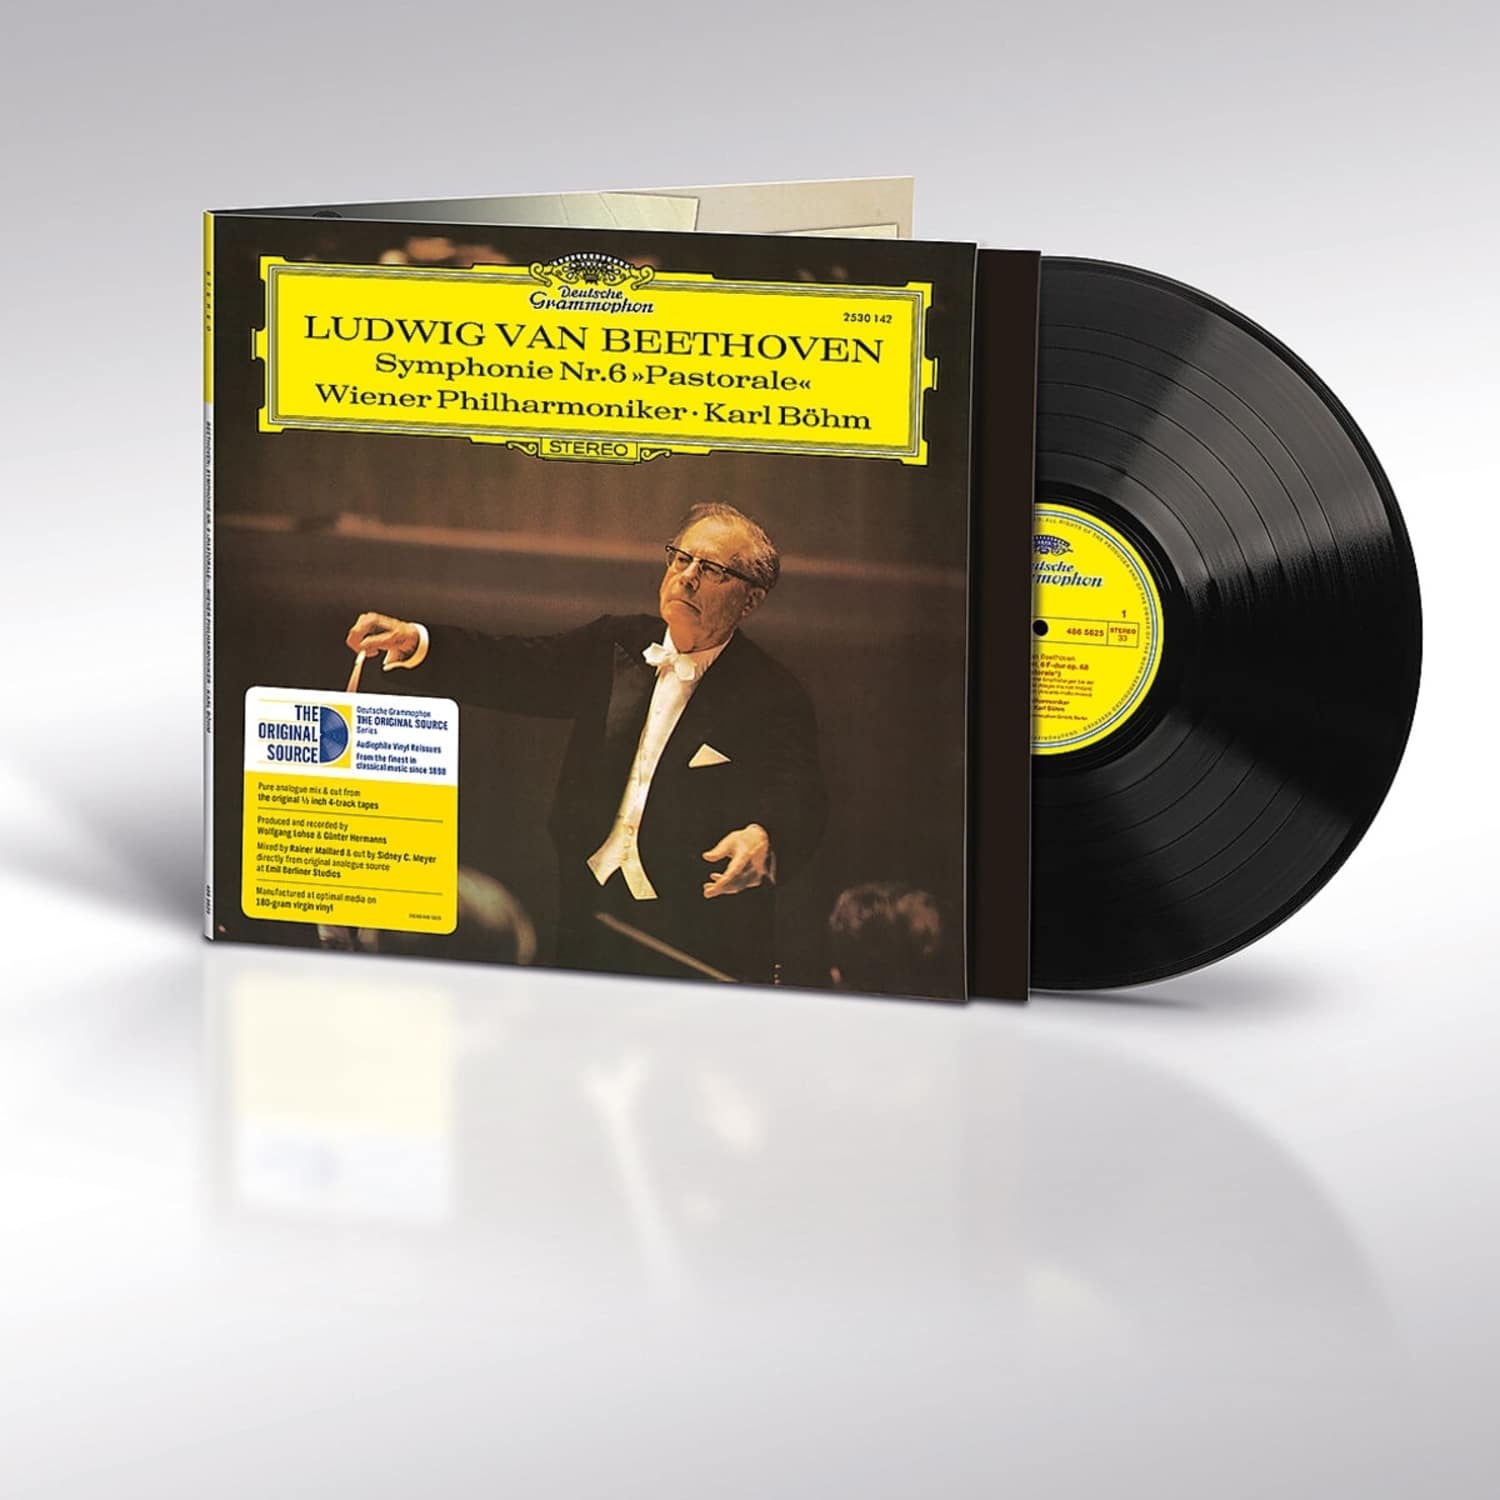 Karl Bhm / Wiener Philharmoniker - BEETHOVEN:SINFONIE NR.6 - PASTORALE - 